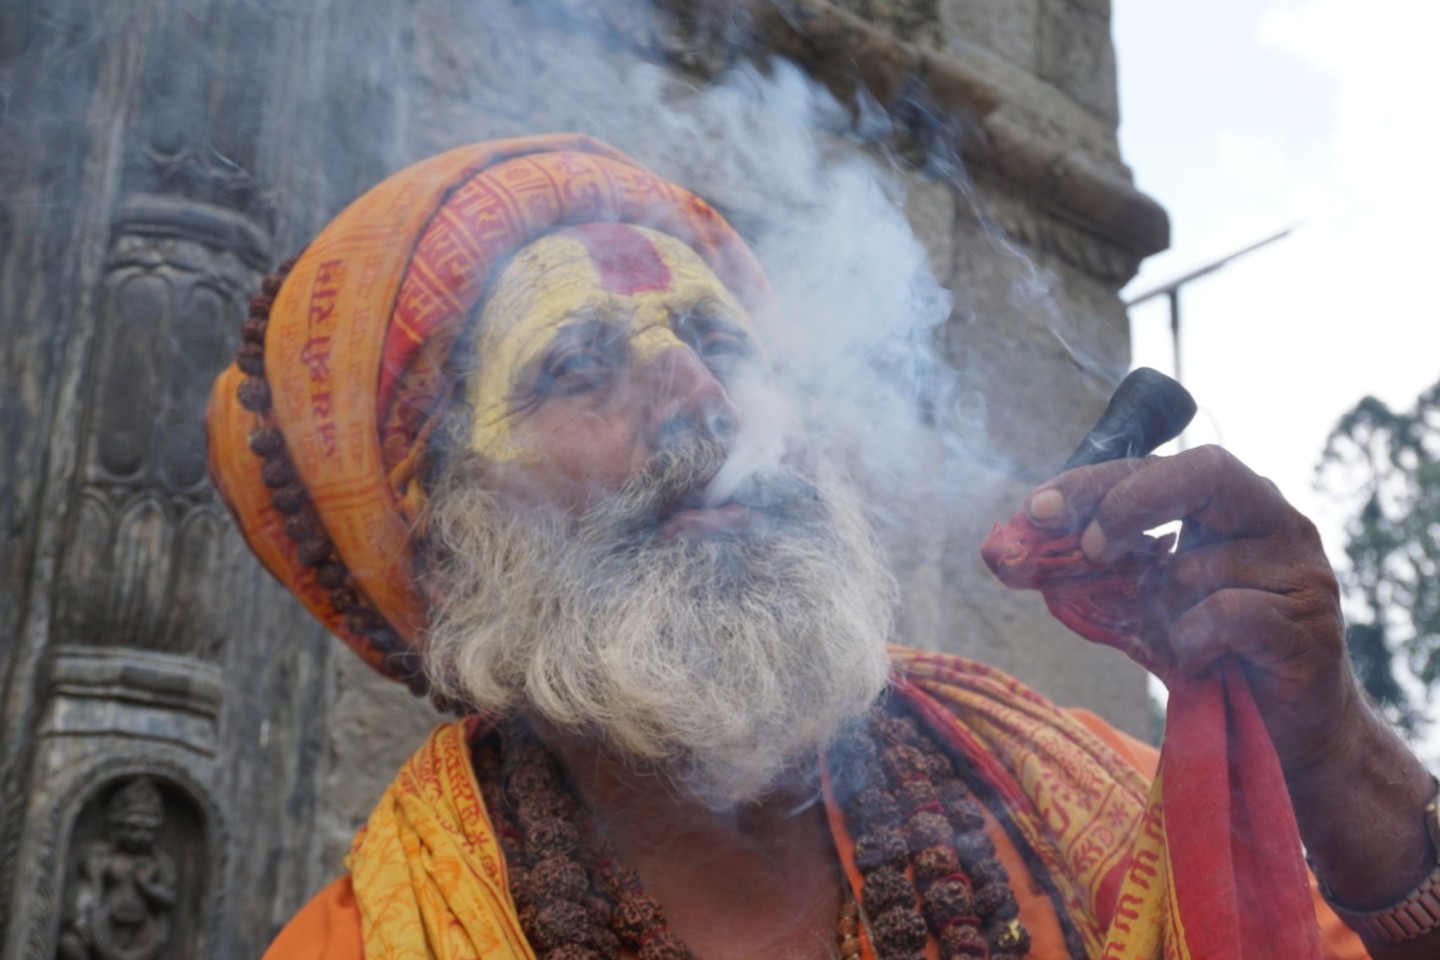 Ein Sadhu (ein heiliger Mann) raucht Marihuana auf dem Gelände eines Tempels in Kathmandu.